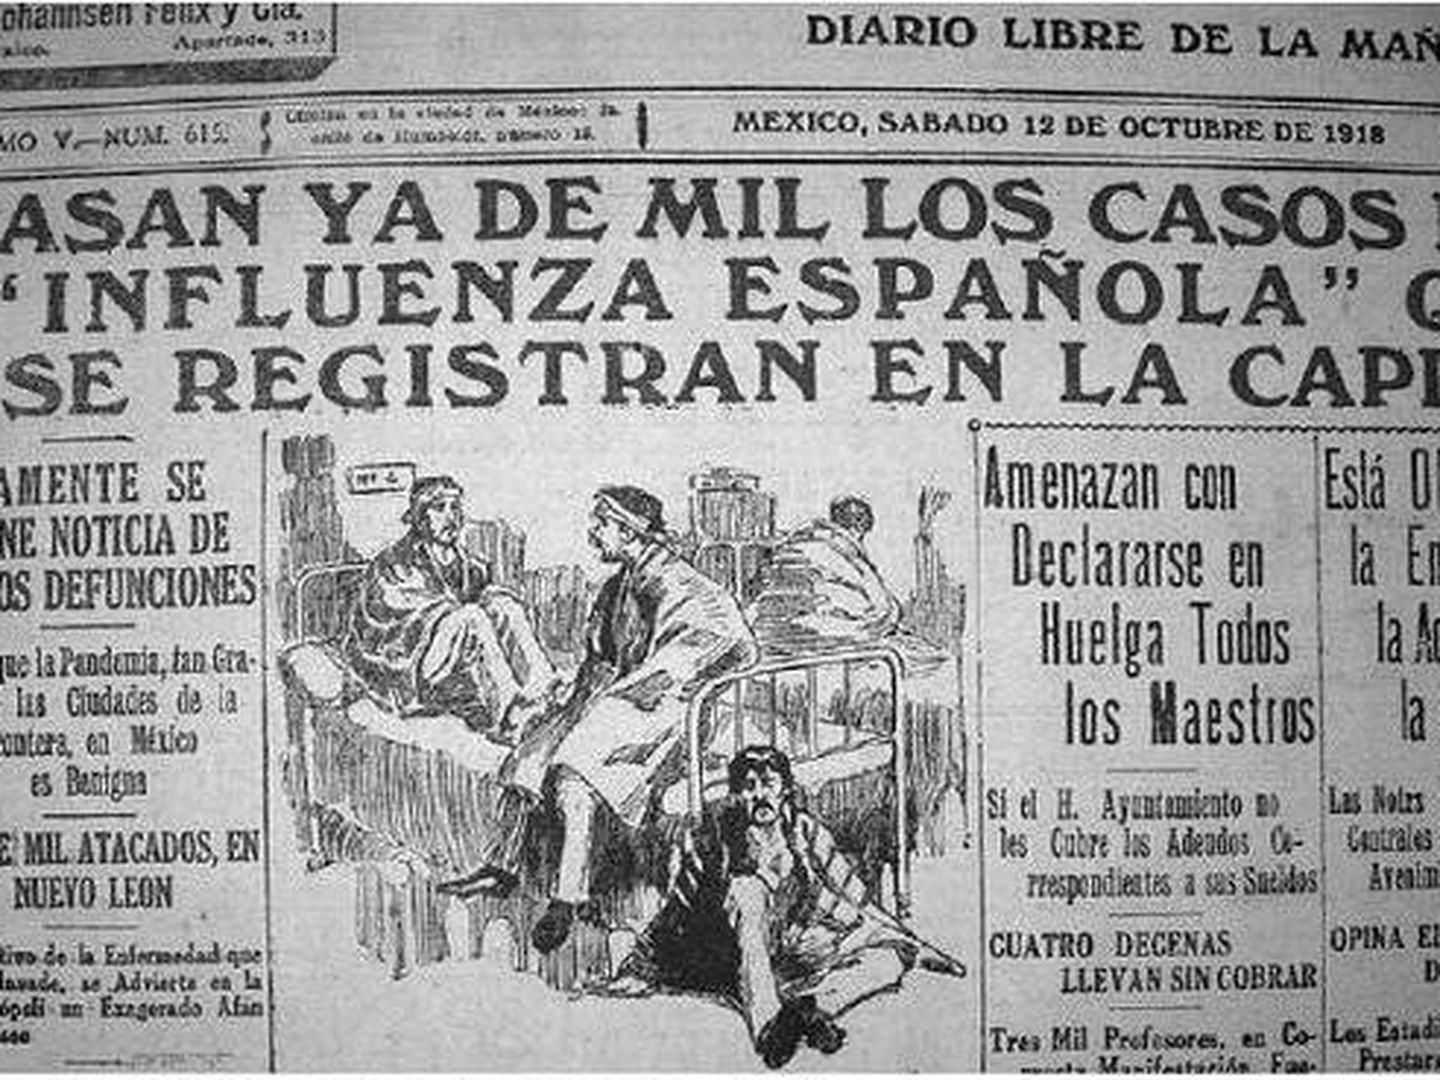 Durante la pandemia de gripe española no hubo vacunas, la mutación genética natural del virus fue la que lo llevó a ir remitiendo.